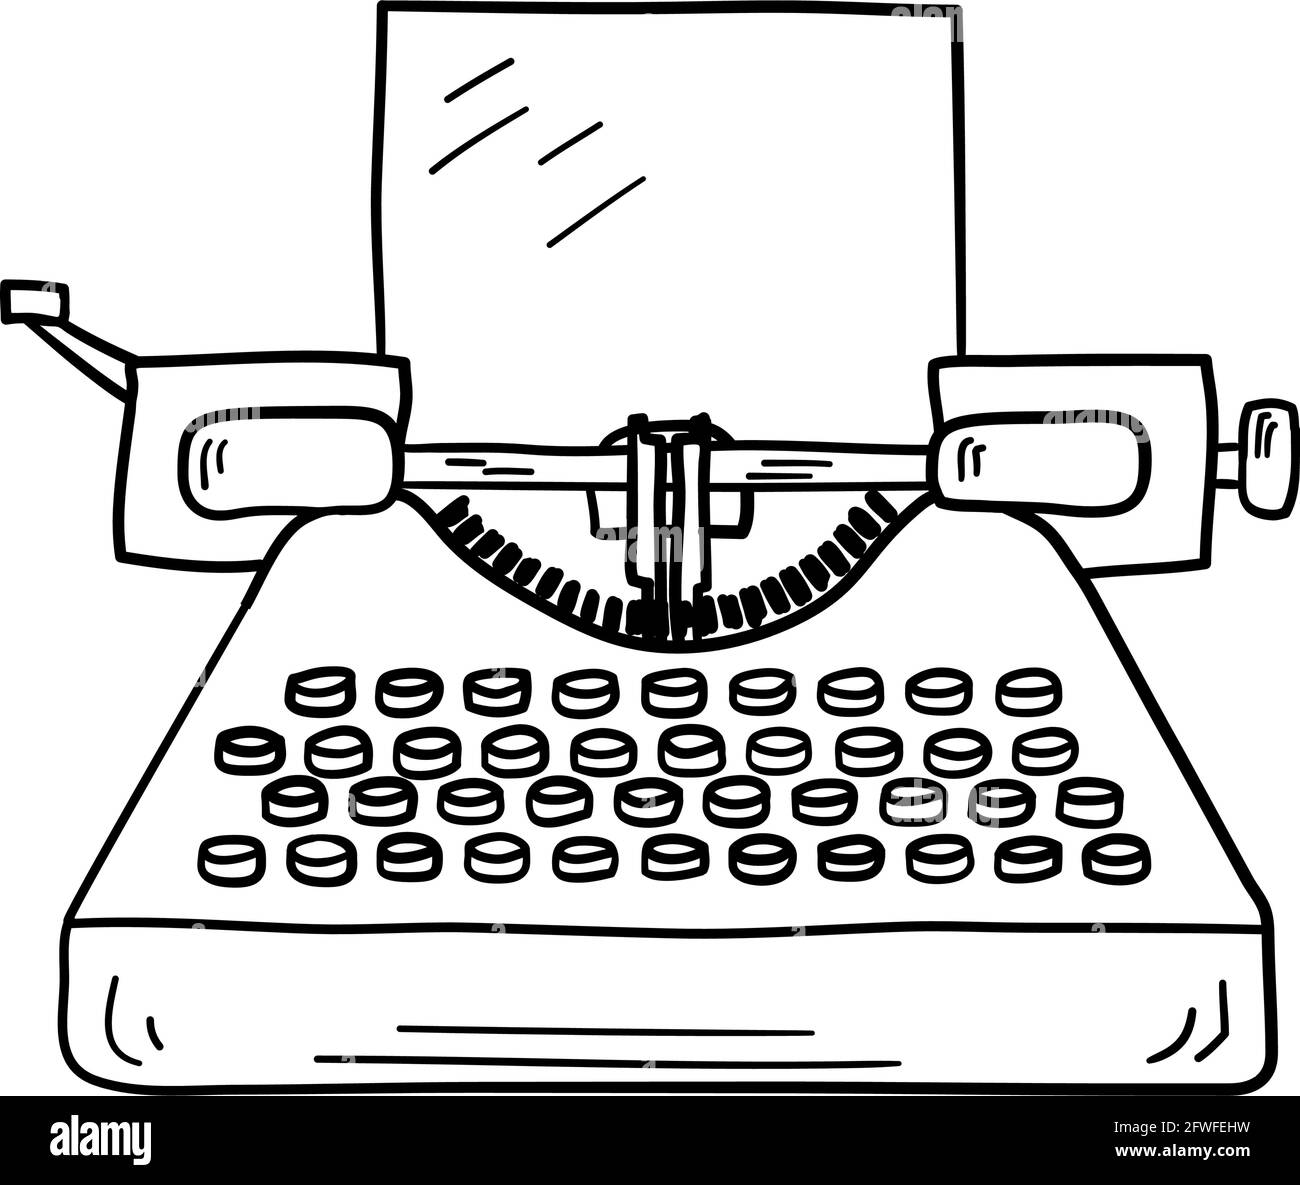 The Quiet World Typewriter Sketch by calmorgan on DeviantArt